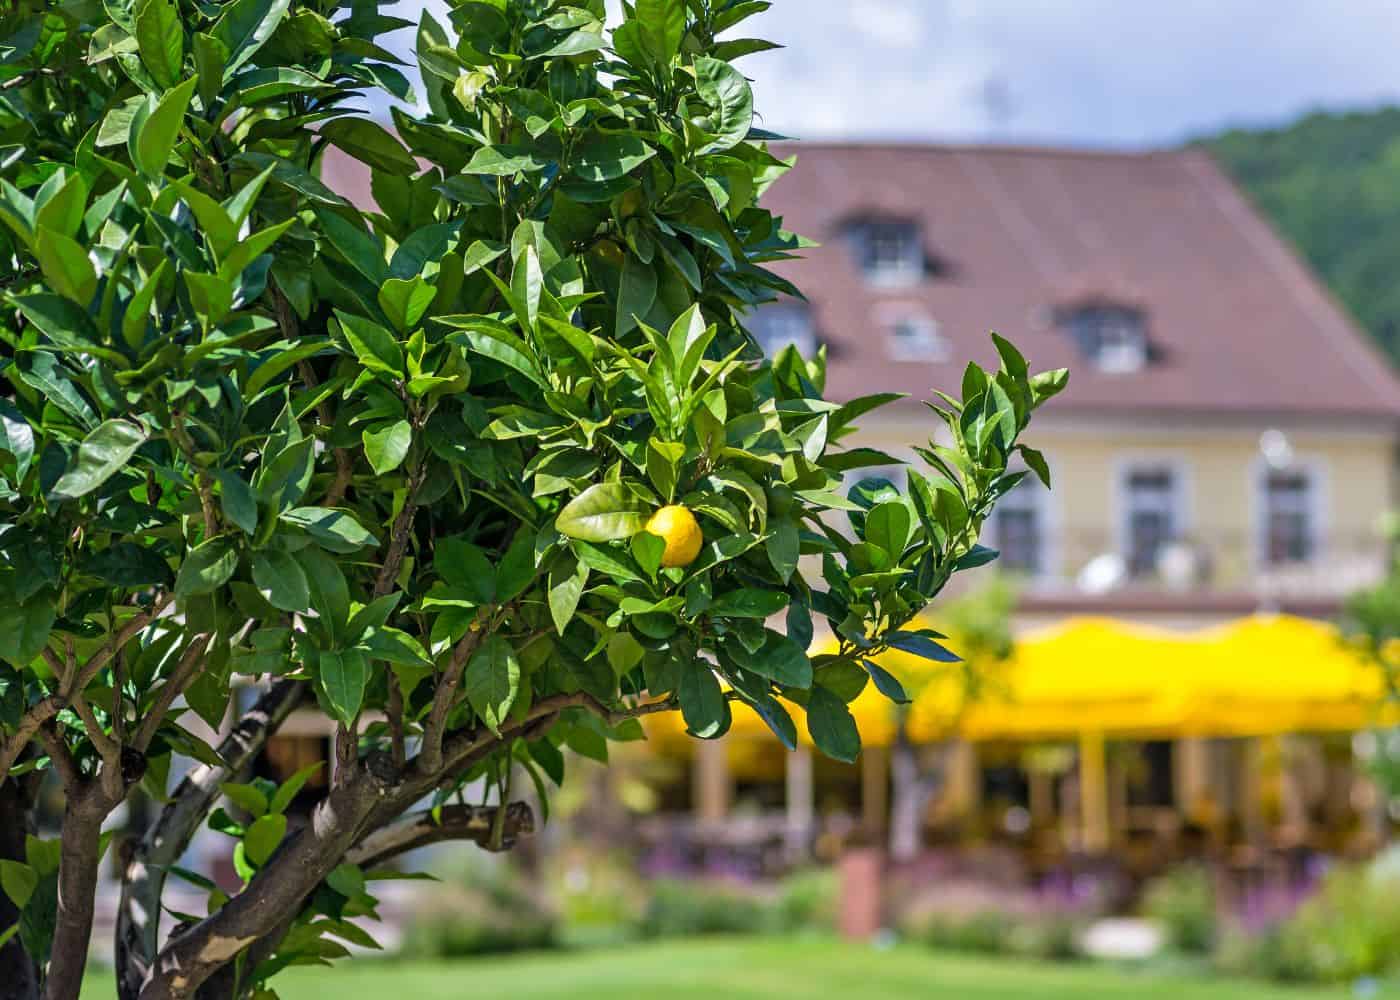 Lemon tree in a park